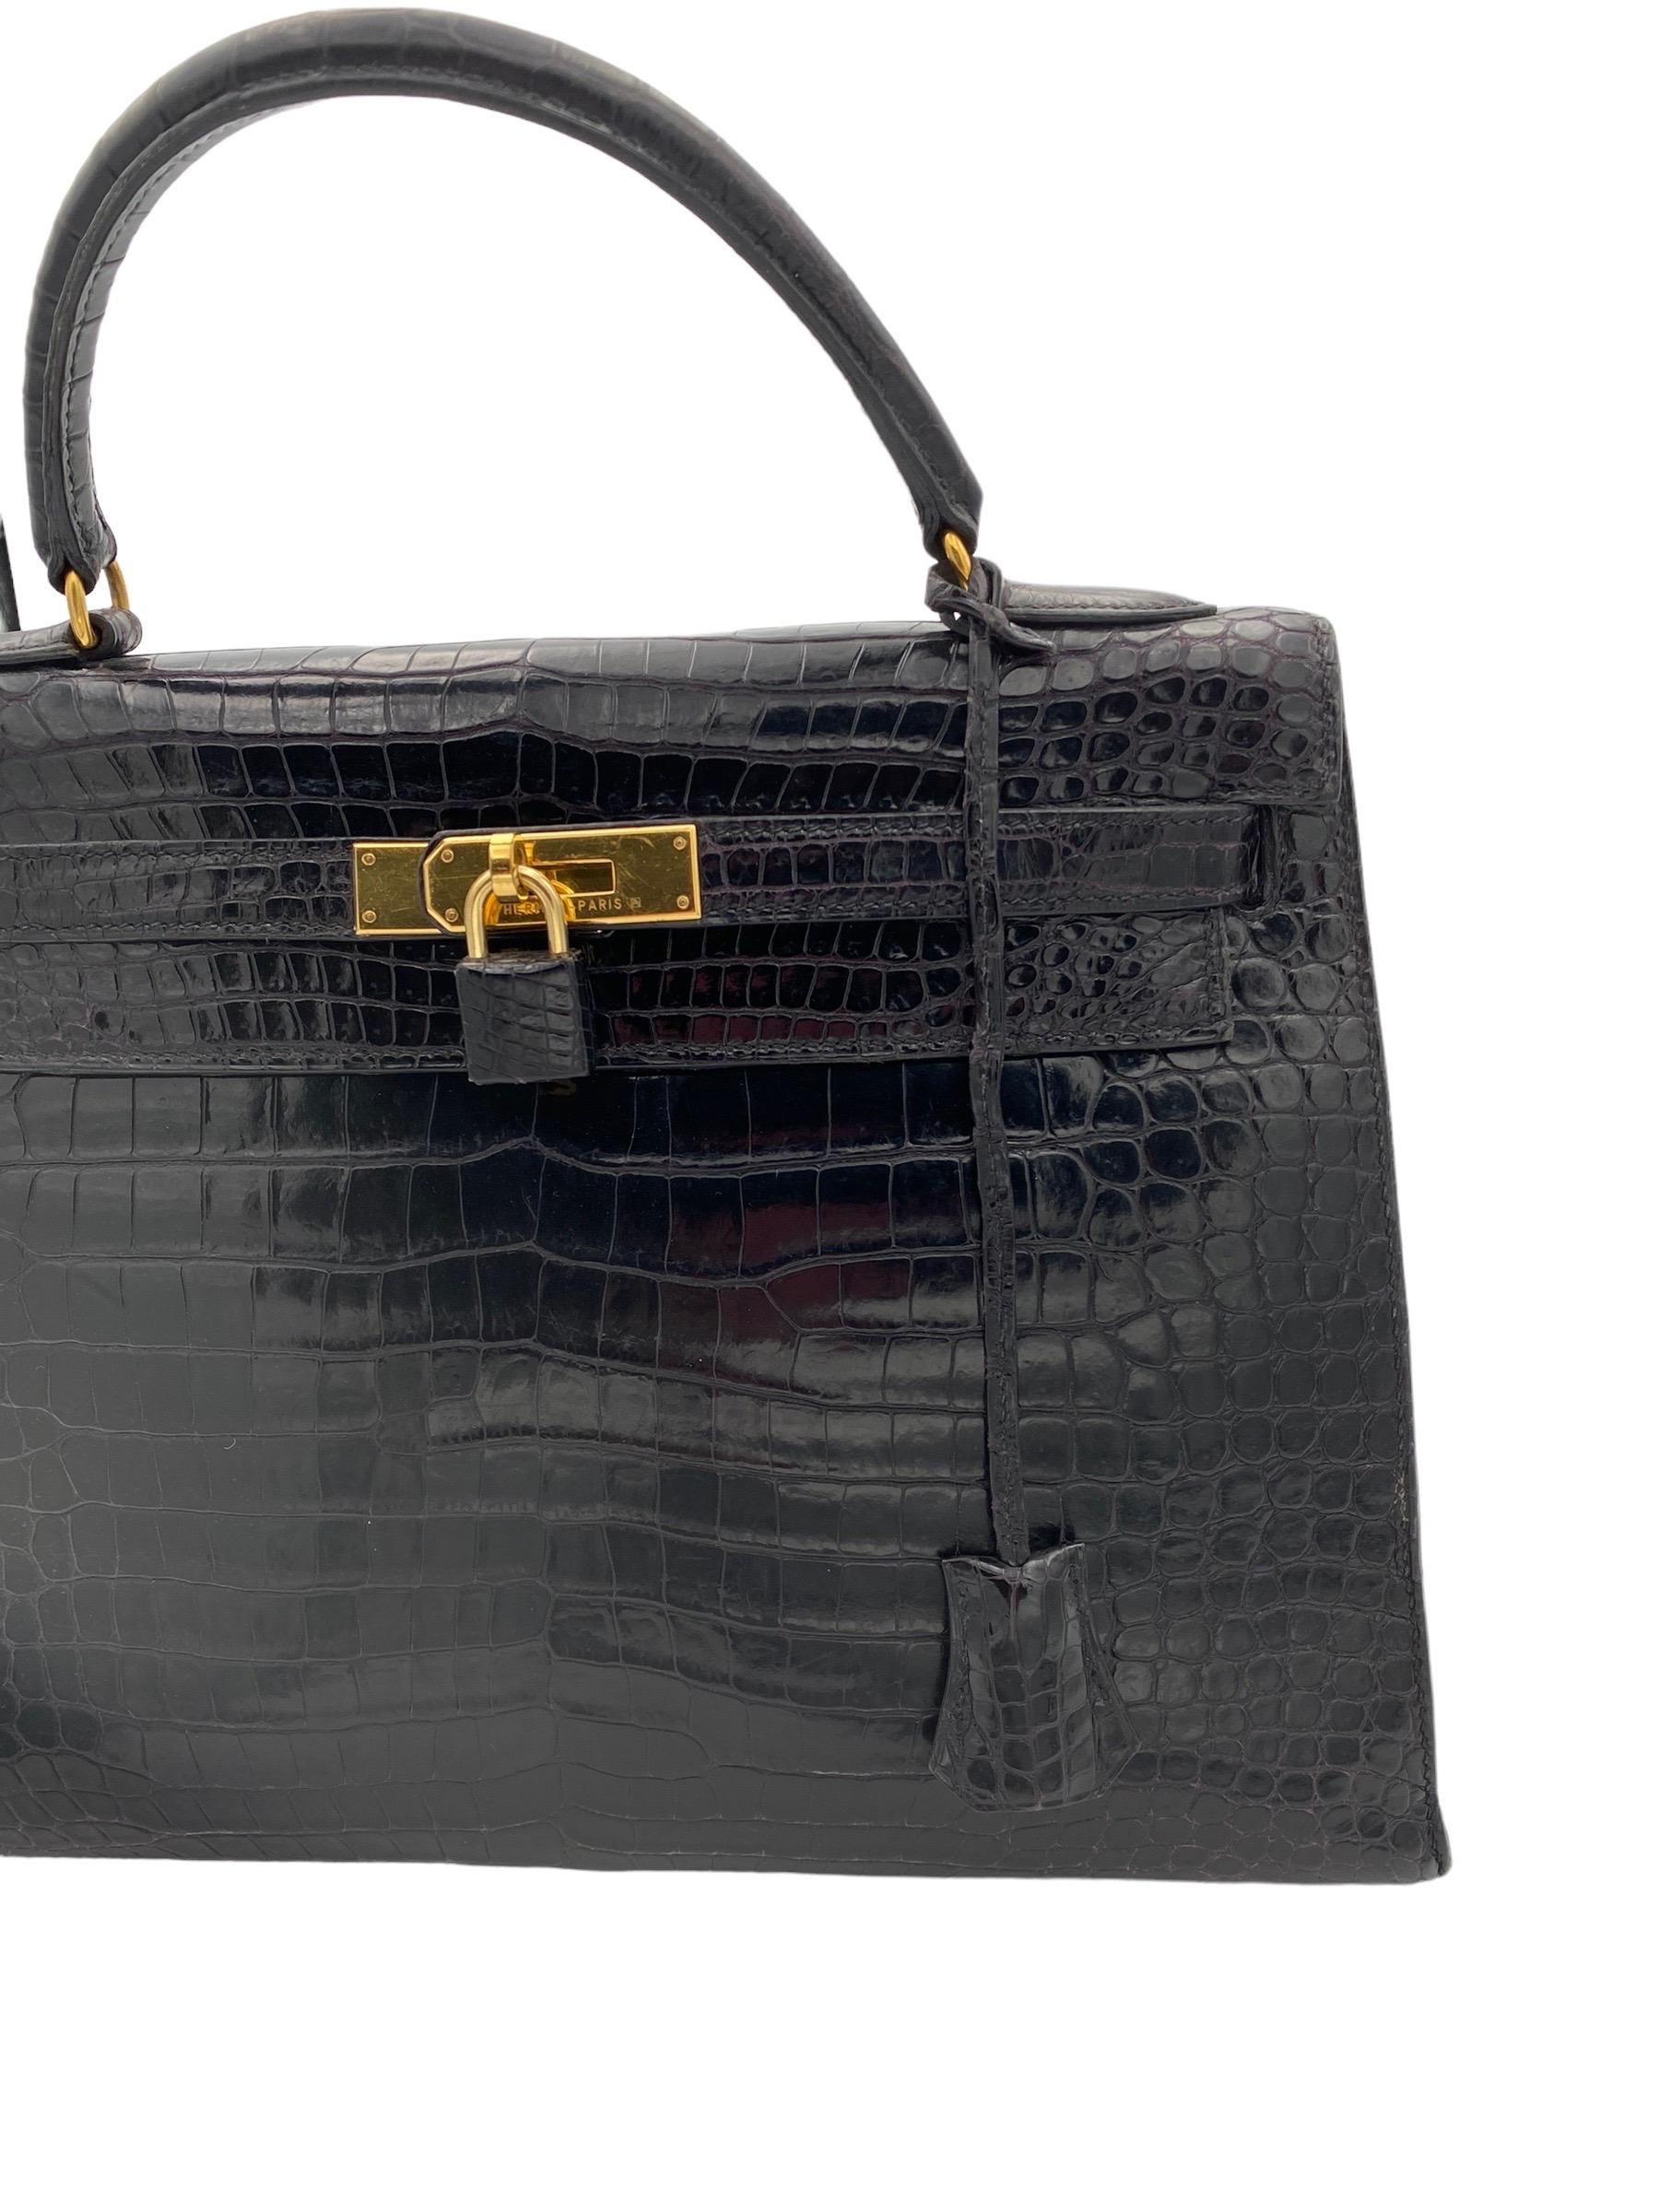 1998 Hermès Kelly 32 Black Leather Top Handle Bag 4